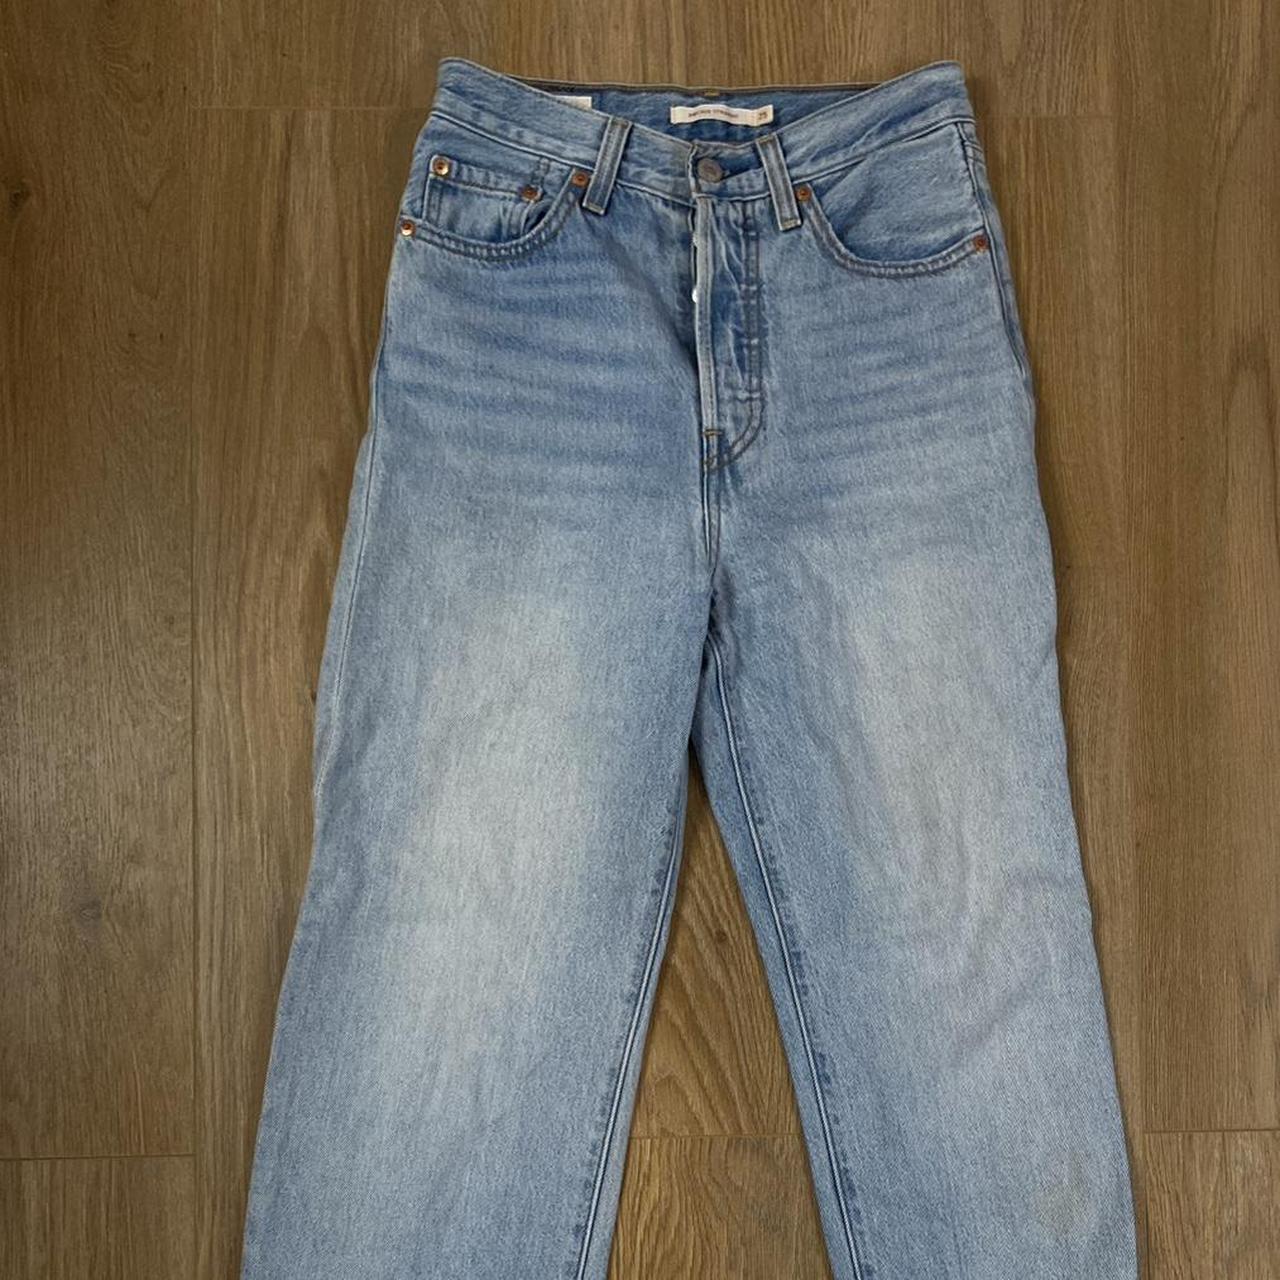 levis ribcage jeans - Depop